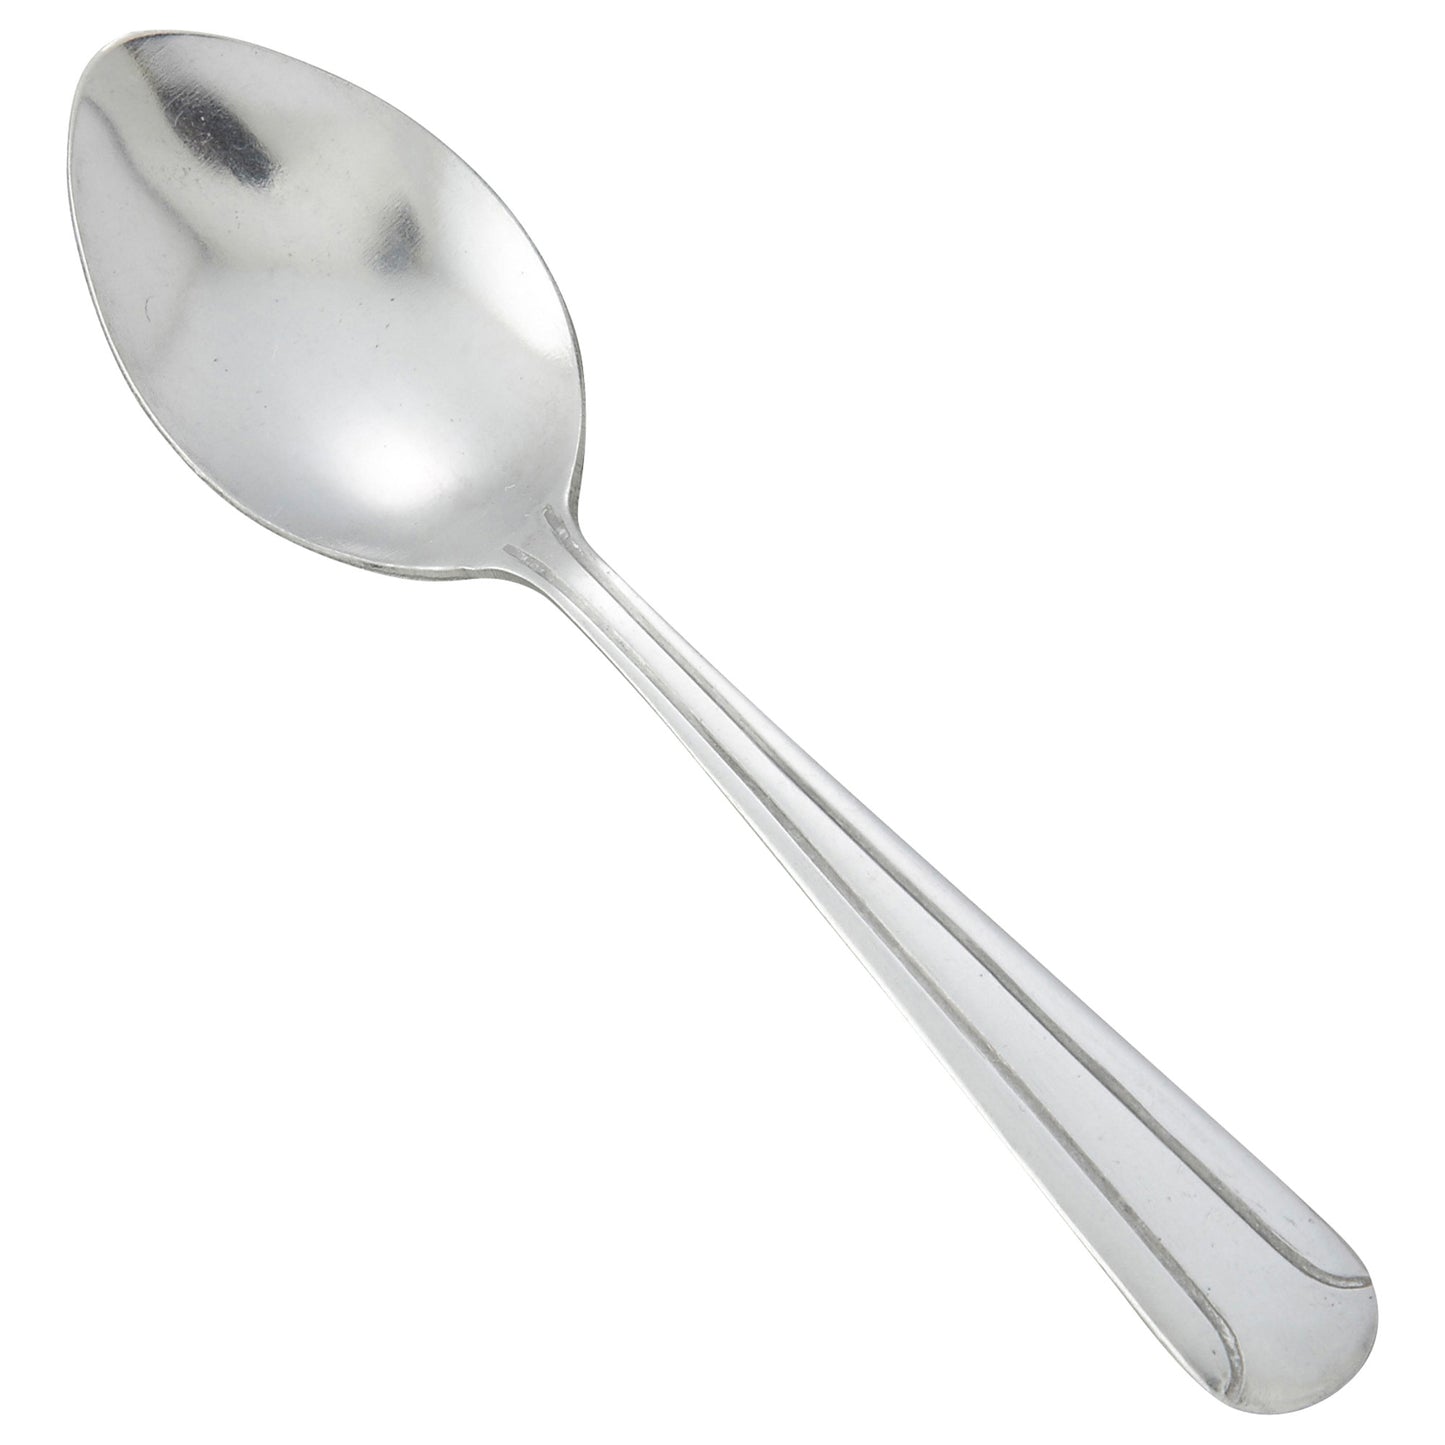 0001-09 - Dominion Demitasse Spoon, 18/0 Medium Weight